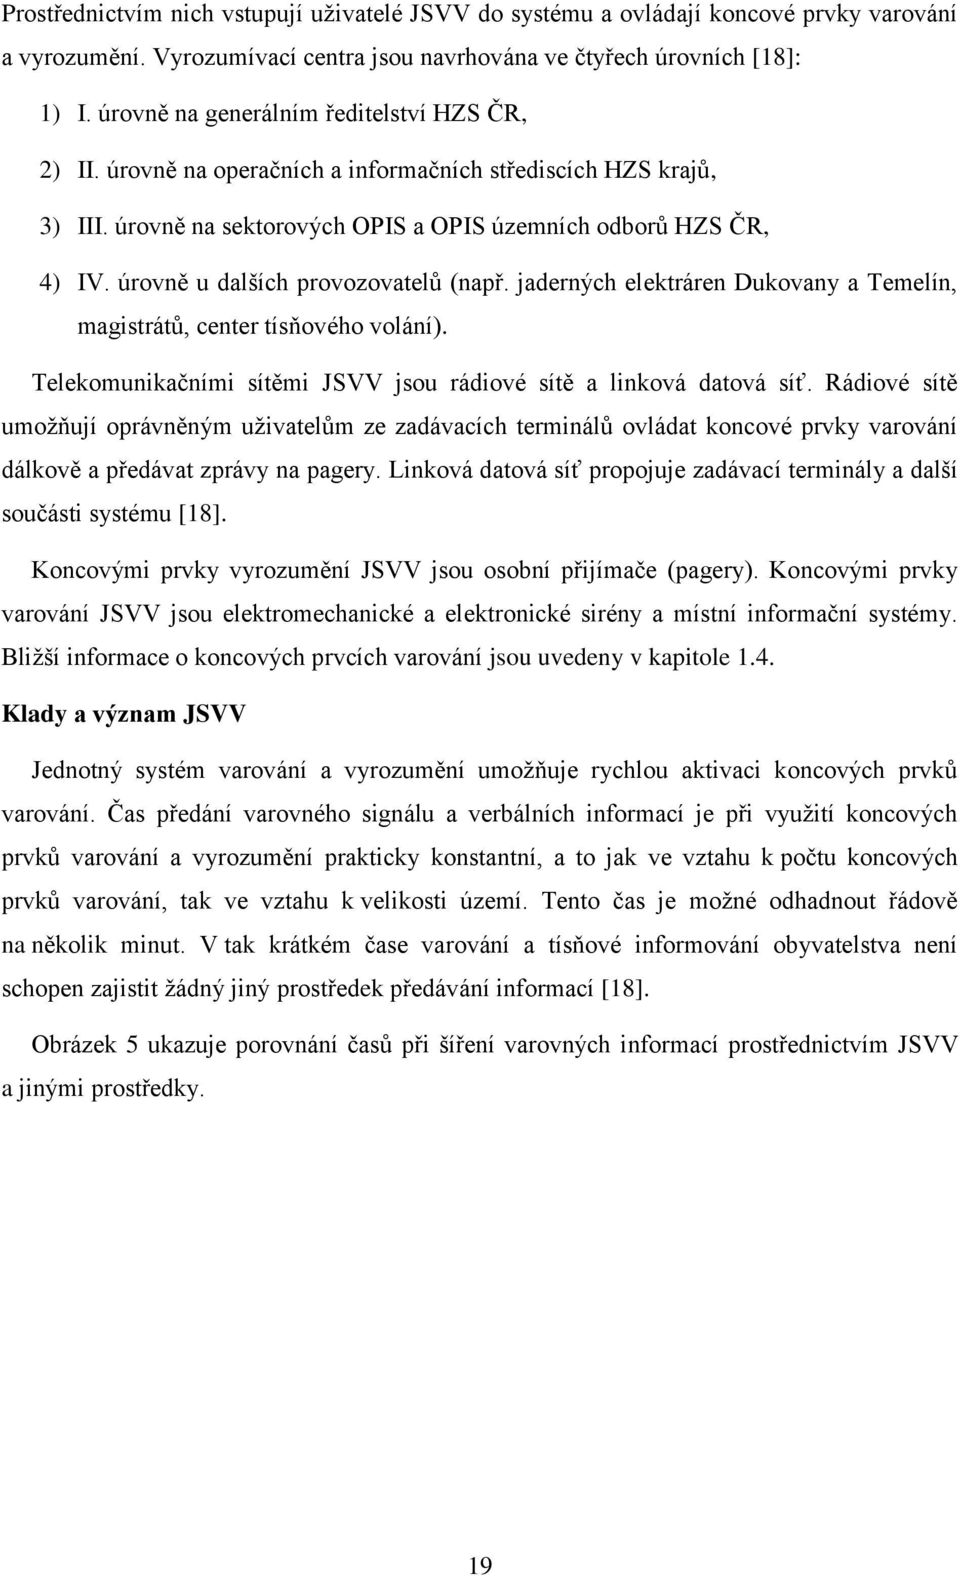 úrovně u dalších provozovatelů (např. jaderných elektráren Dukovany a Temelín, magistrátů, center tísňového volání). Telekomunikačními sítěmi JSVV jsou rádiové sítě a linková datová síť.